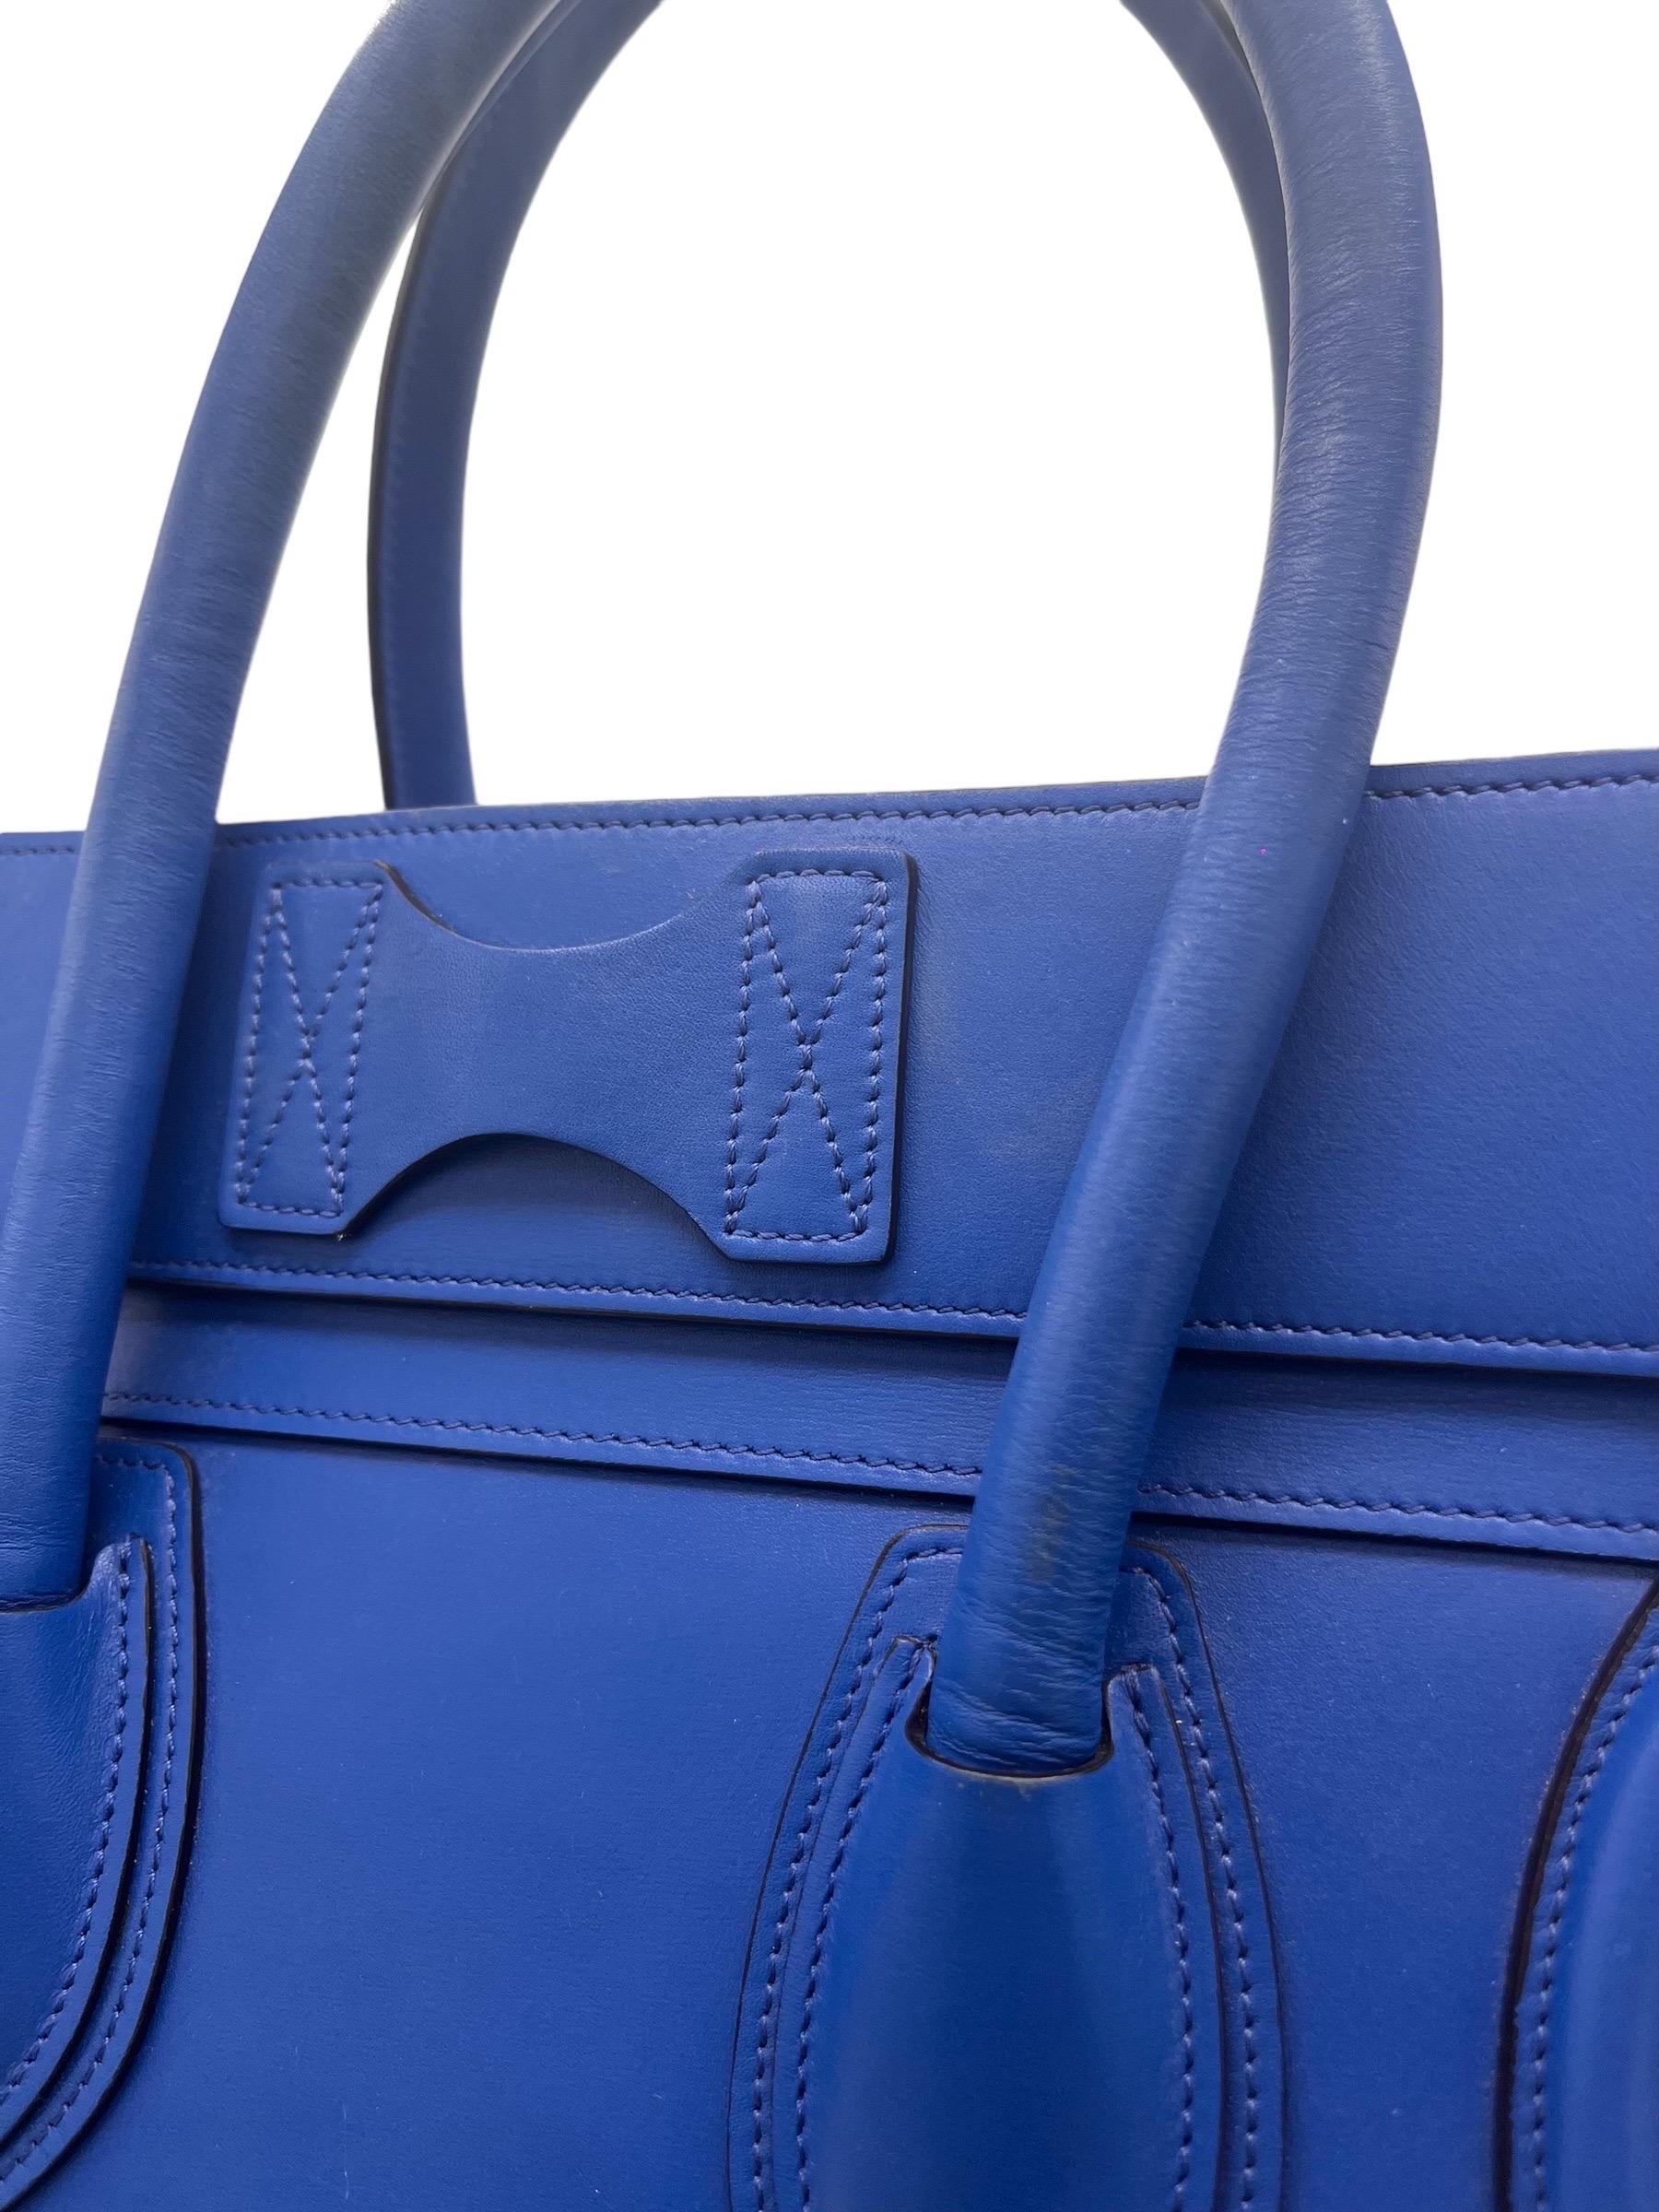 Borsa a Mano Cèline Luggage Medium Blu Elettrico For Sale 10